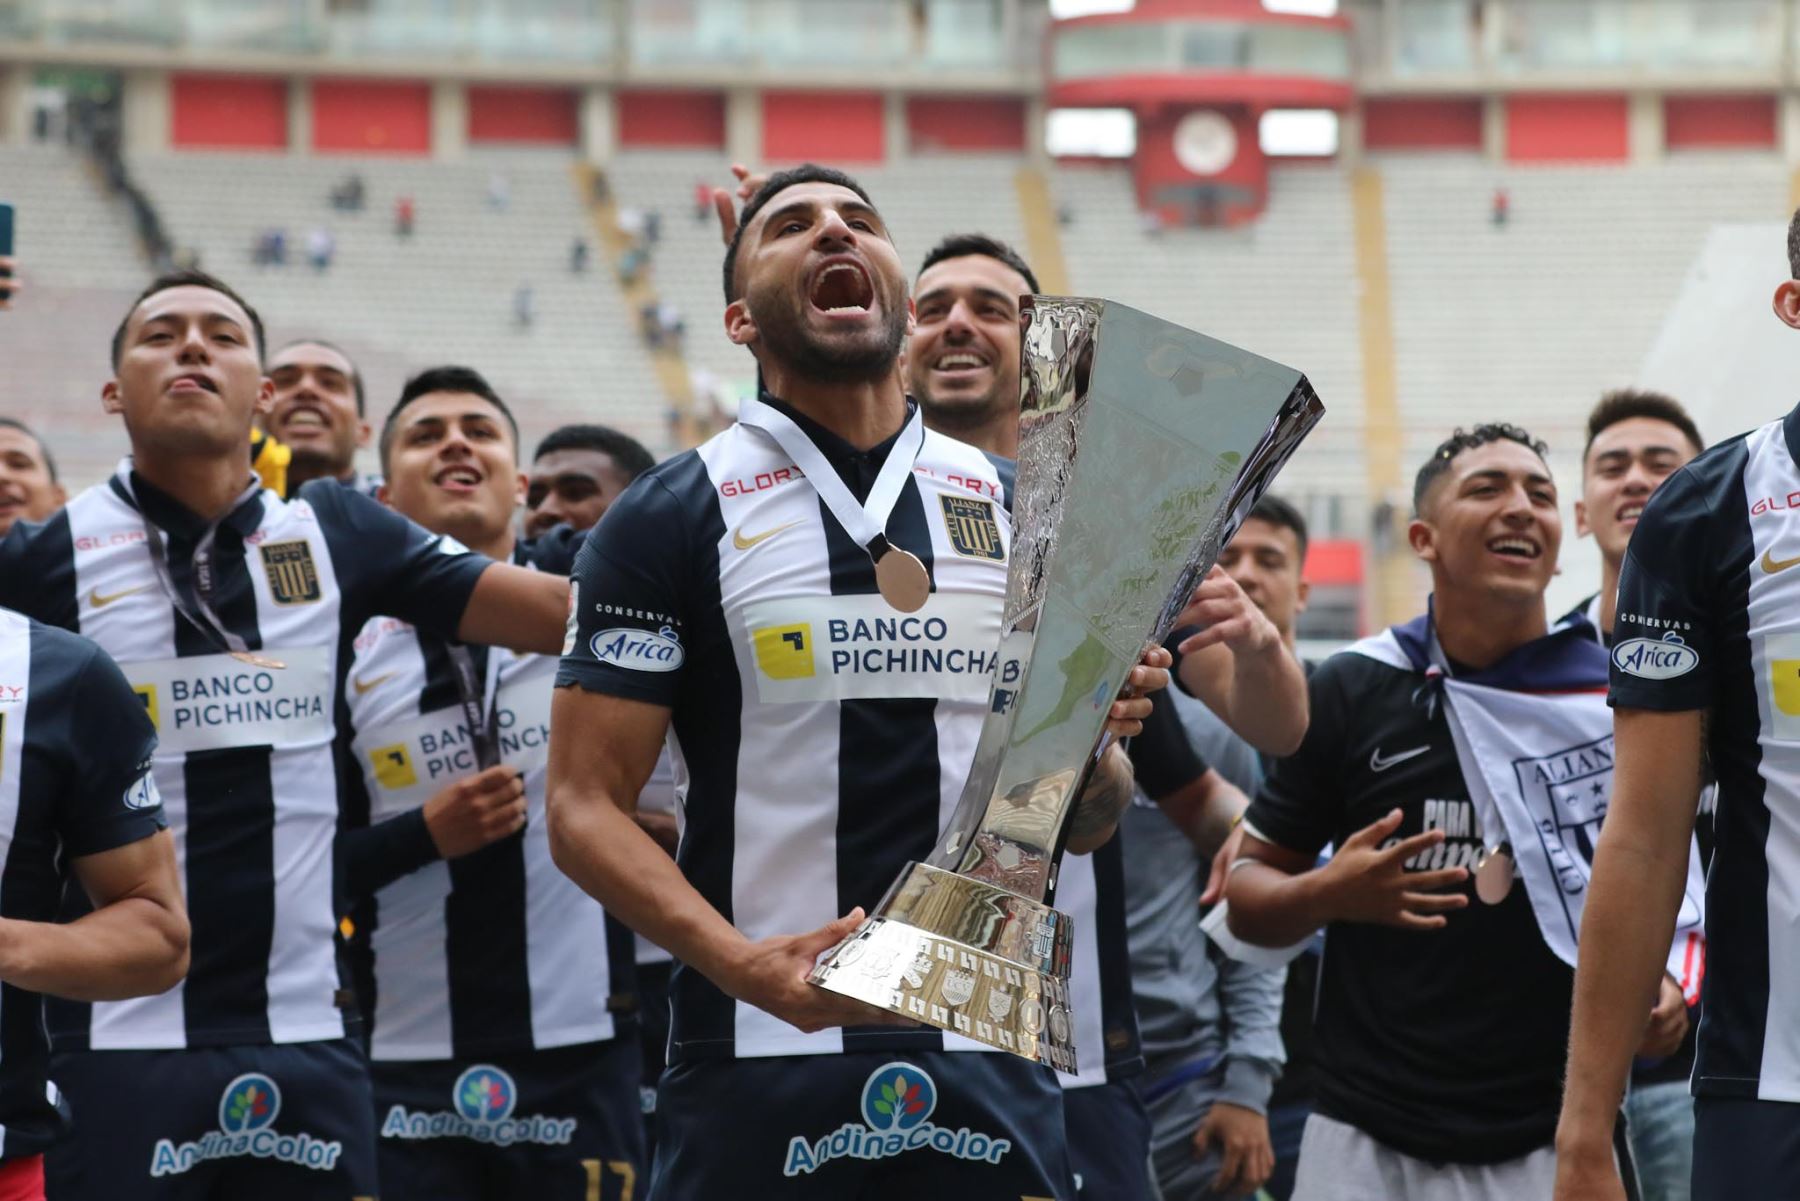 Alianza Lima se consagró campeón de la Liga 1, tras empatar sin goles ante Sporting Cristal a quienes habían derrotado 1-0 en el partido de ida. Ambos encuentros se disputaron en el Estadio Nacional. Foto: FPF